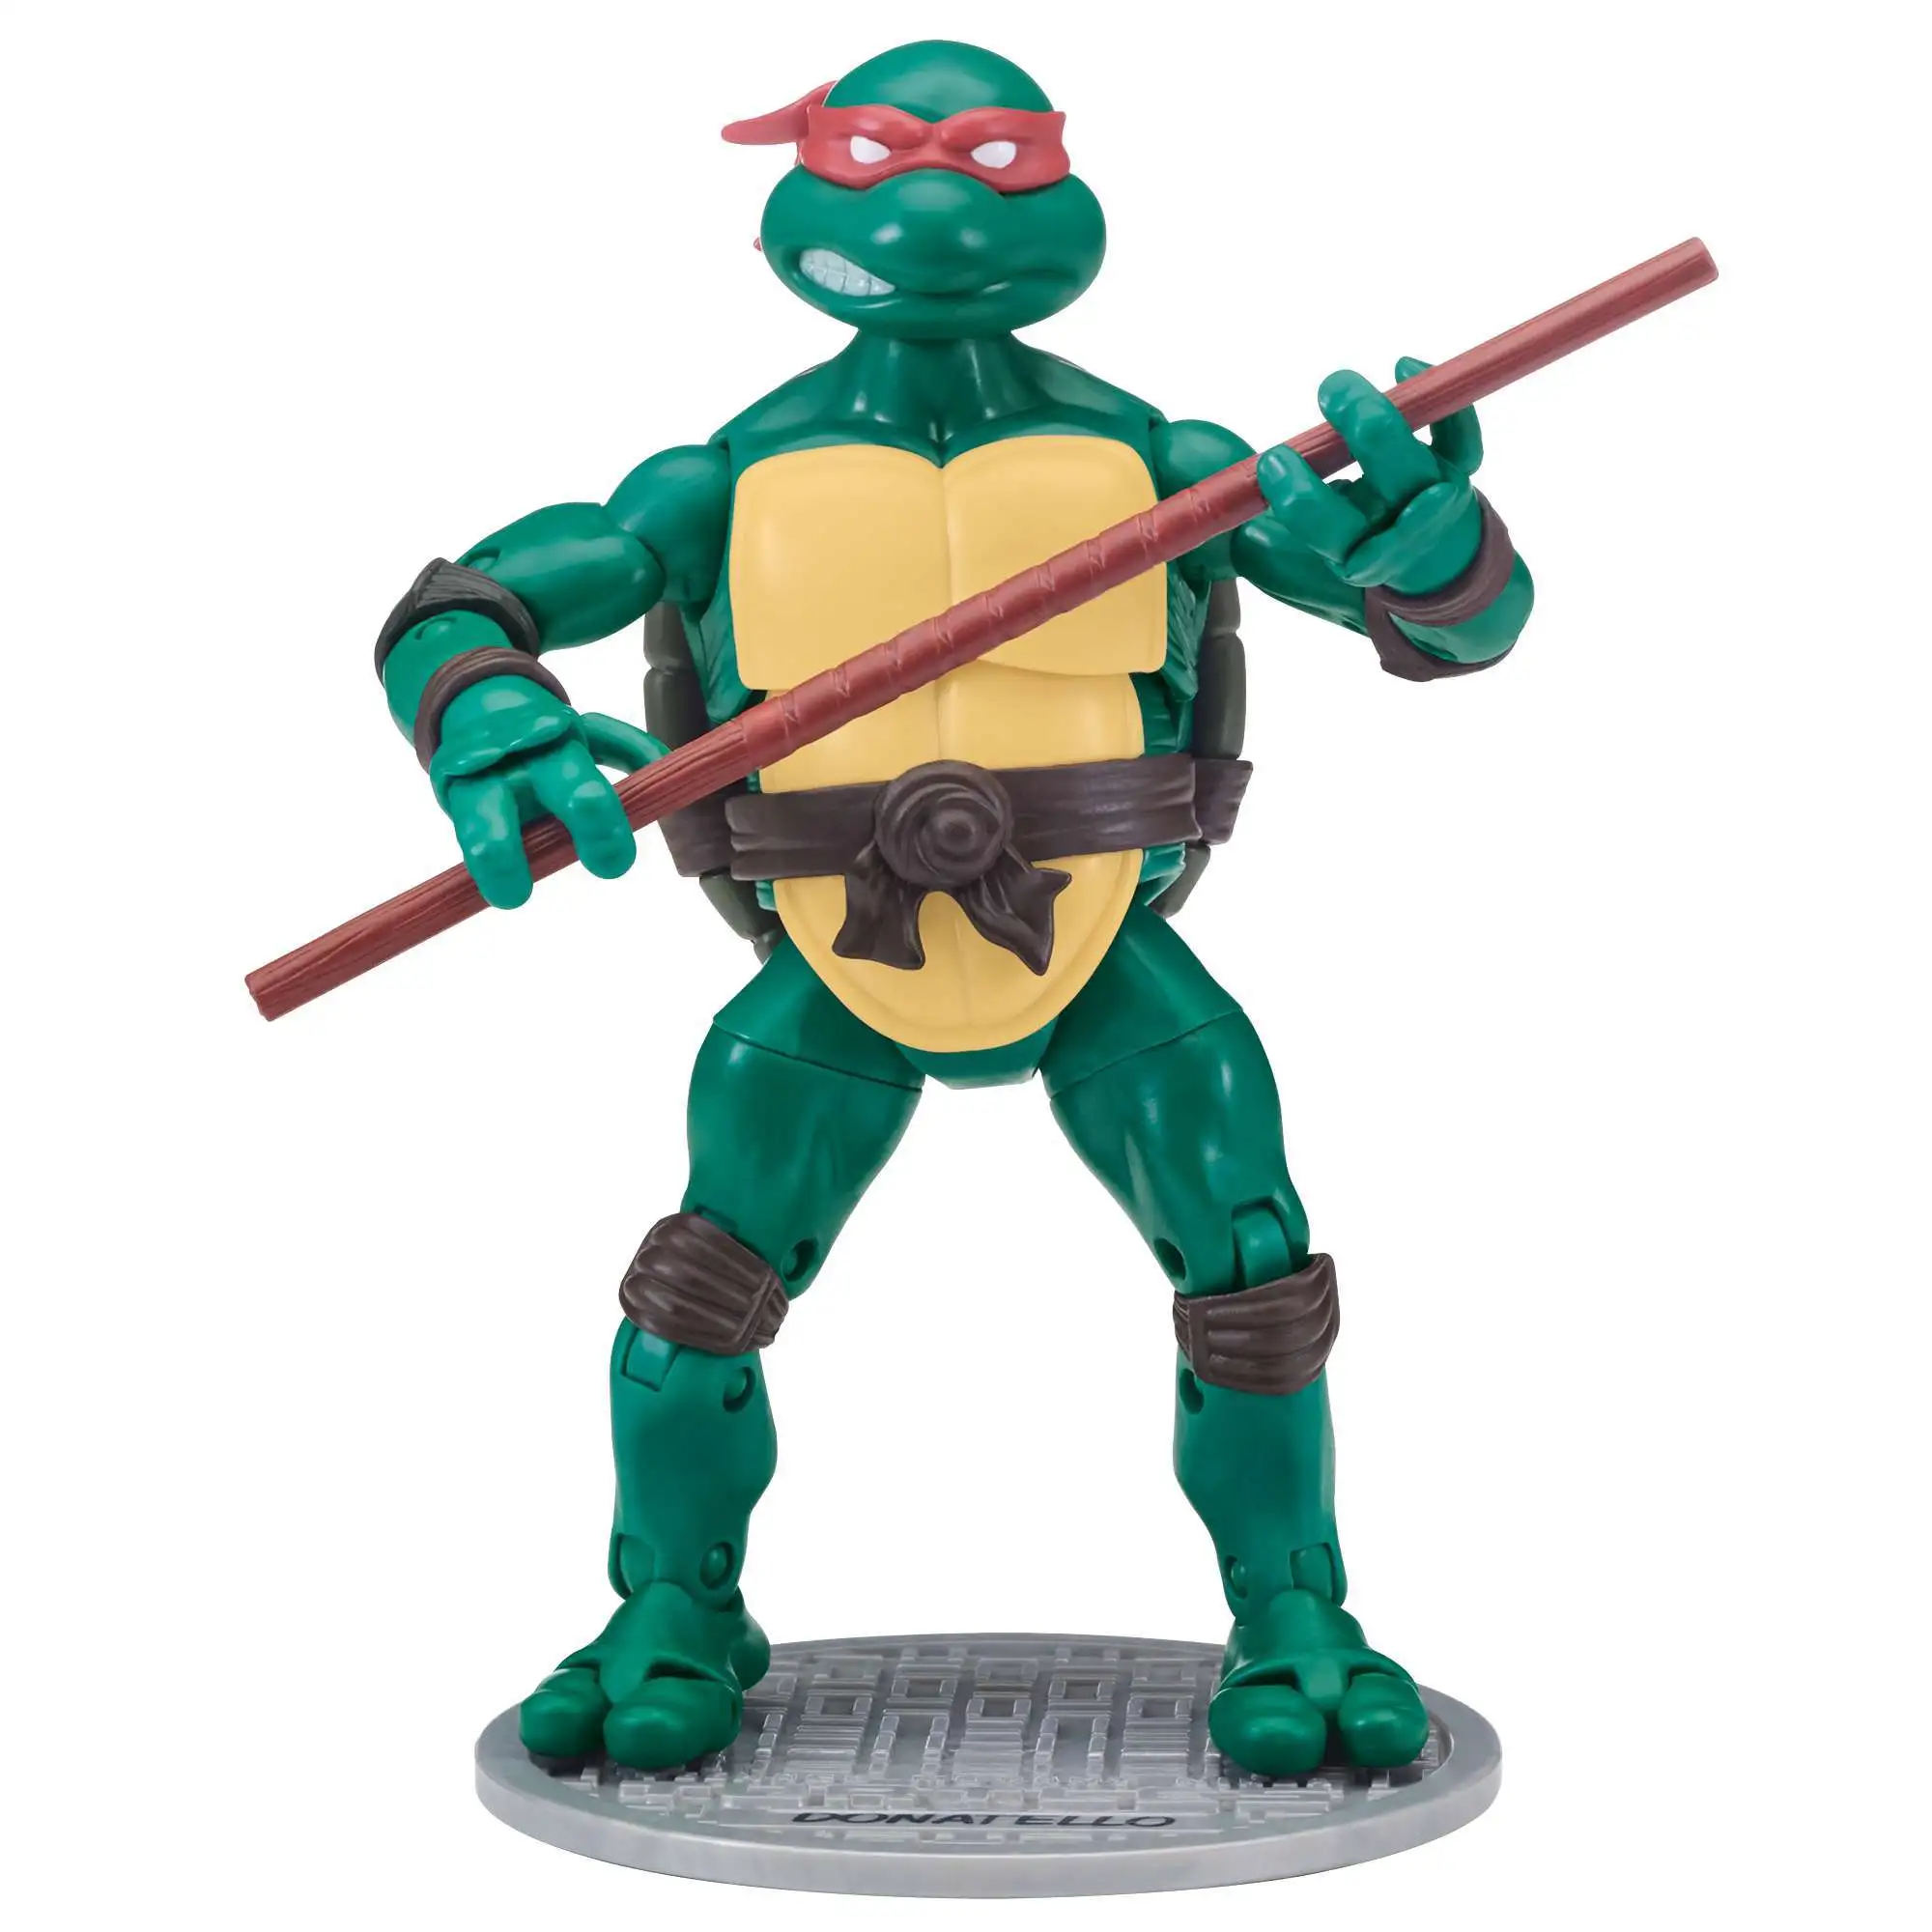 Teenage Mutant Ninja Turtles TMNT Mega Construx Series 4 RAPHAEL Mystic Figure 